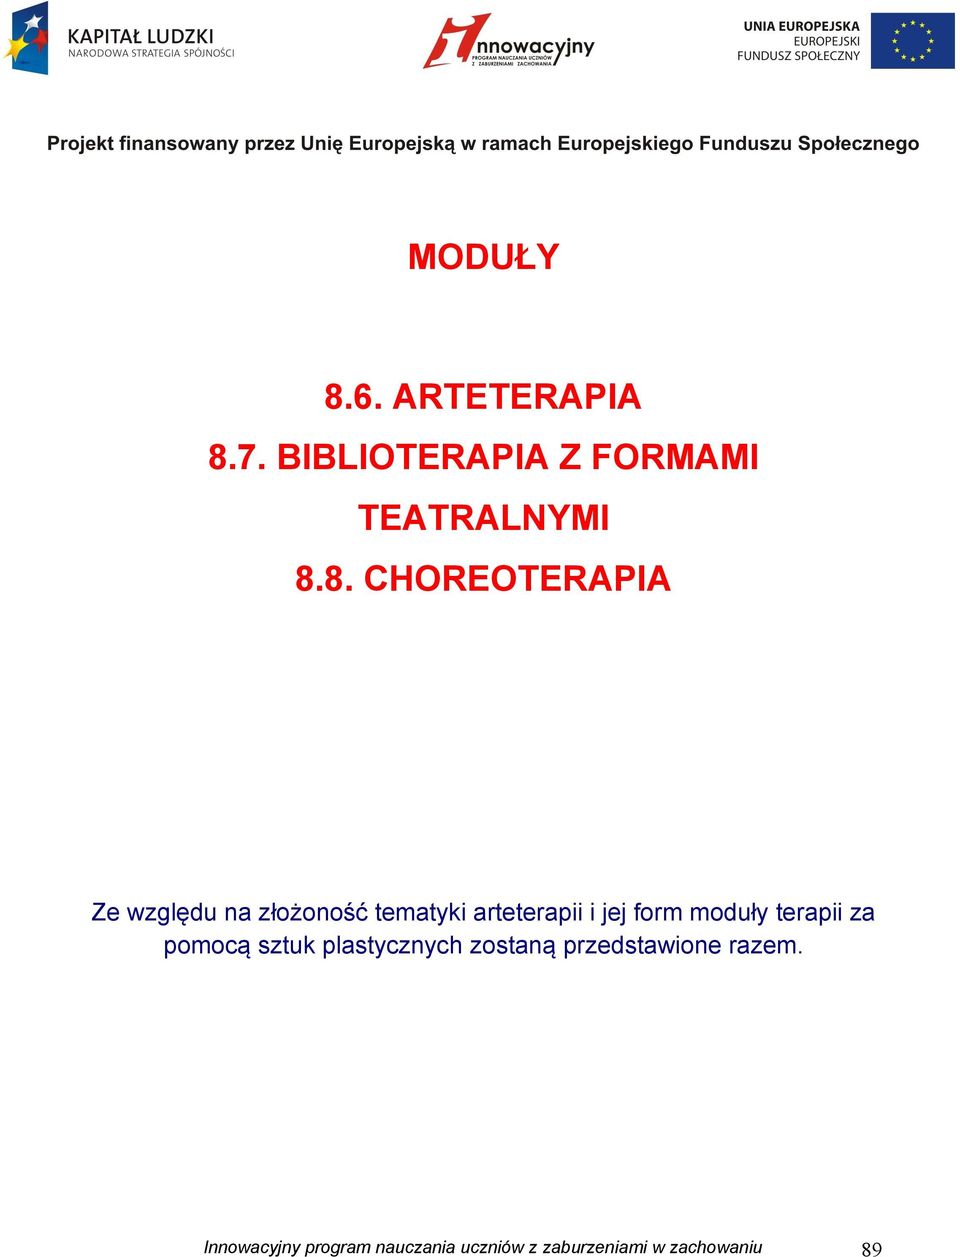 7. BIBLIOTERAPIA Z FORMAMI TEATRALNYMI 8.